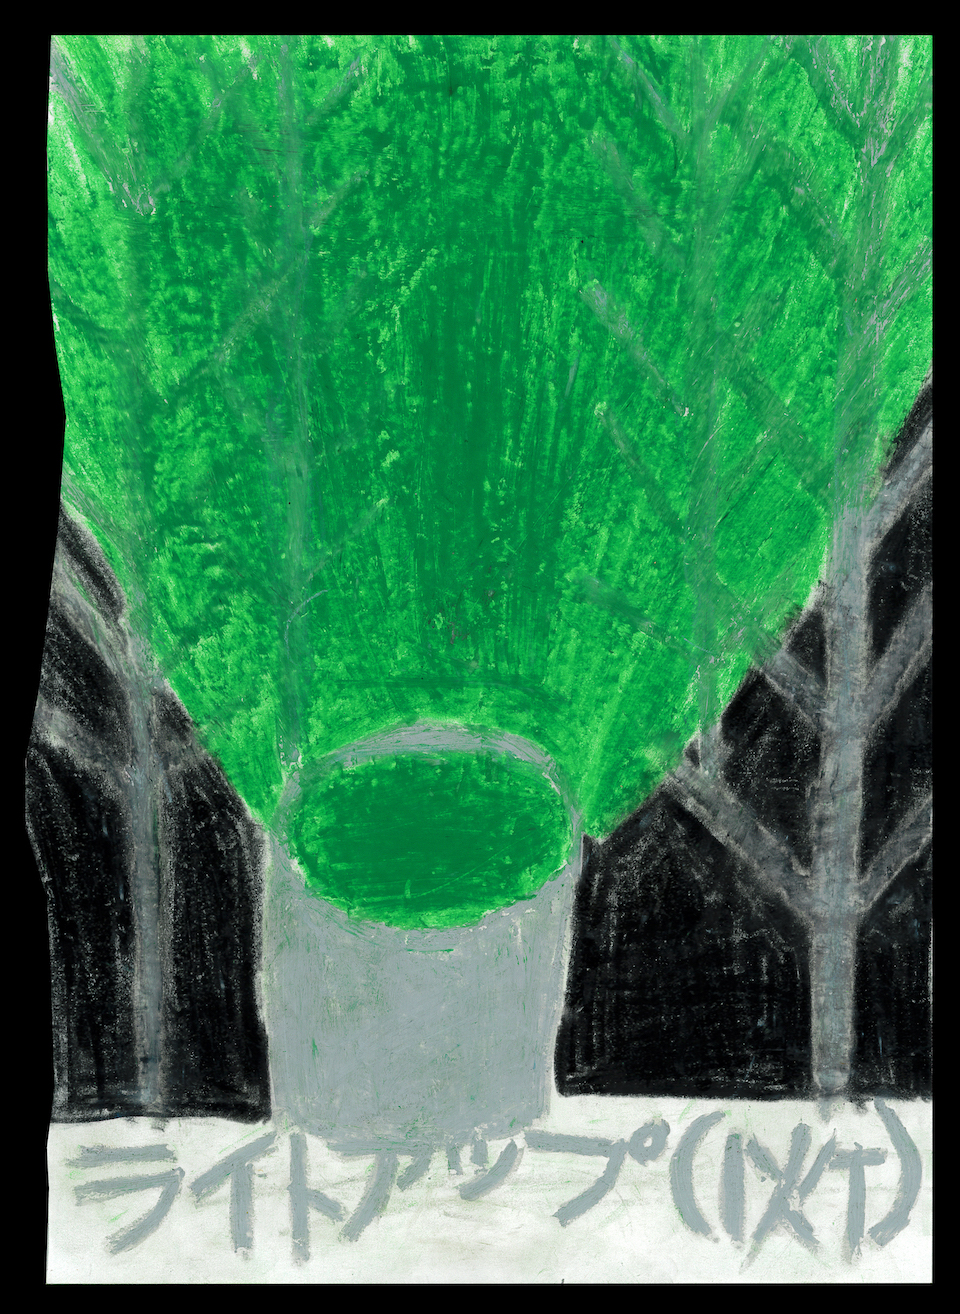 畑中亜未さんの作品。絵の中央下にあるライトから、緑色の強い光が放たれ、絵の両脇にあるグレーの木が照らし出されている。